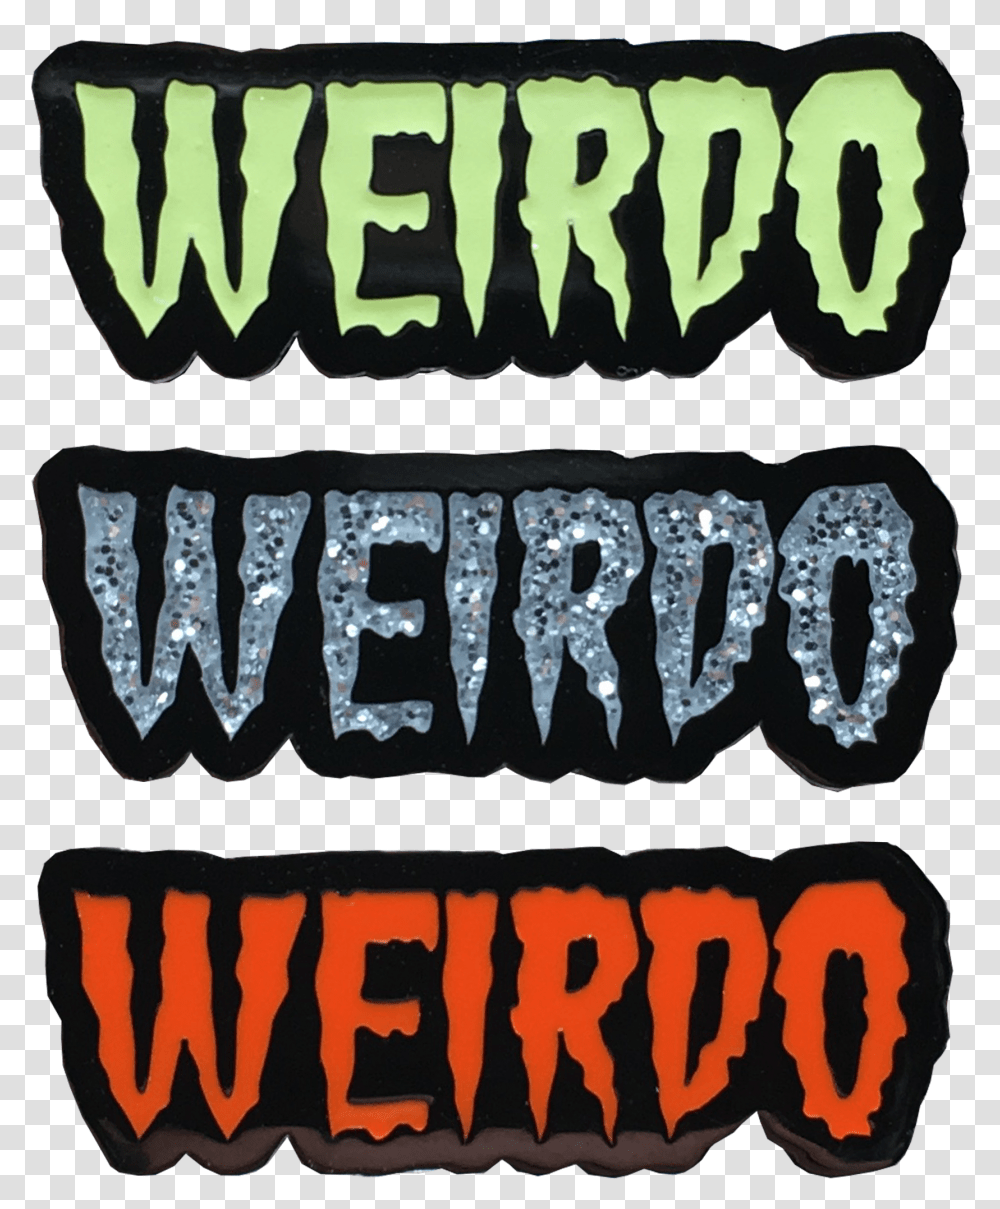 Weirdo Pins 3fvq Mo Graphic Design, Label, Word, Alphabet Transparent Png